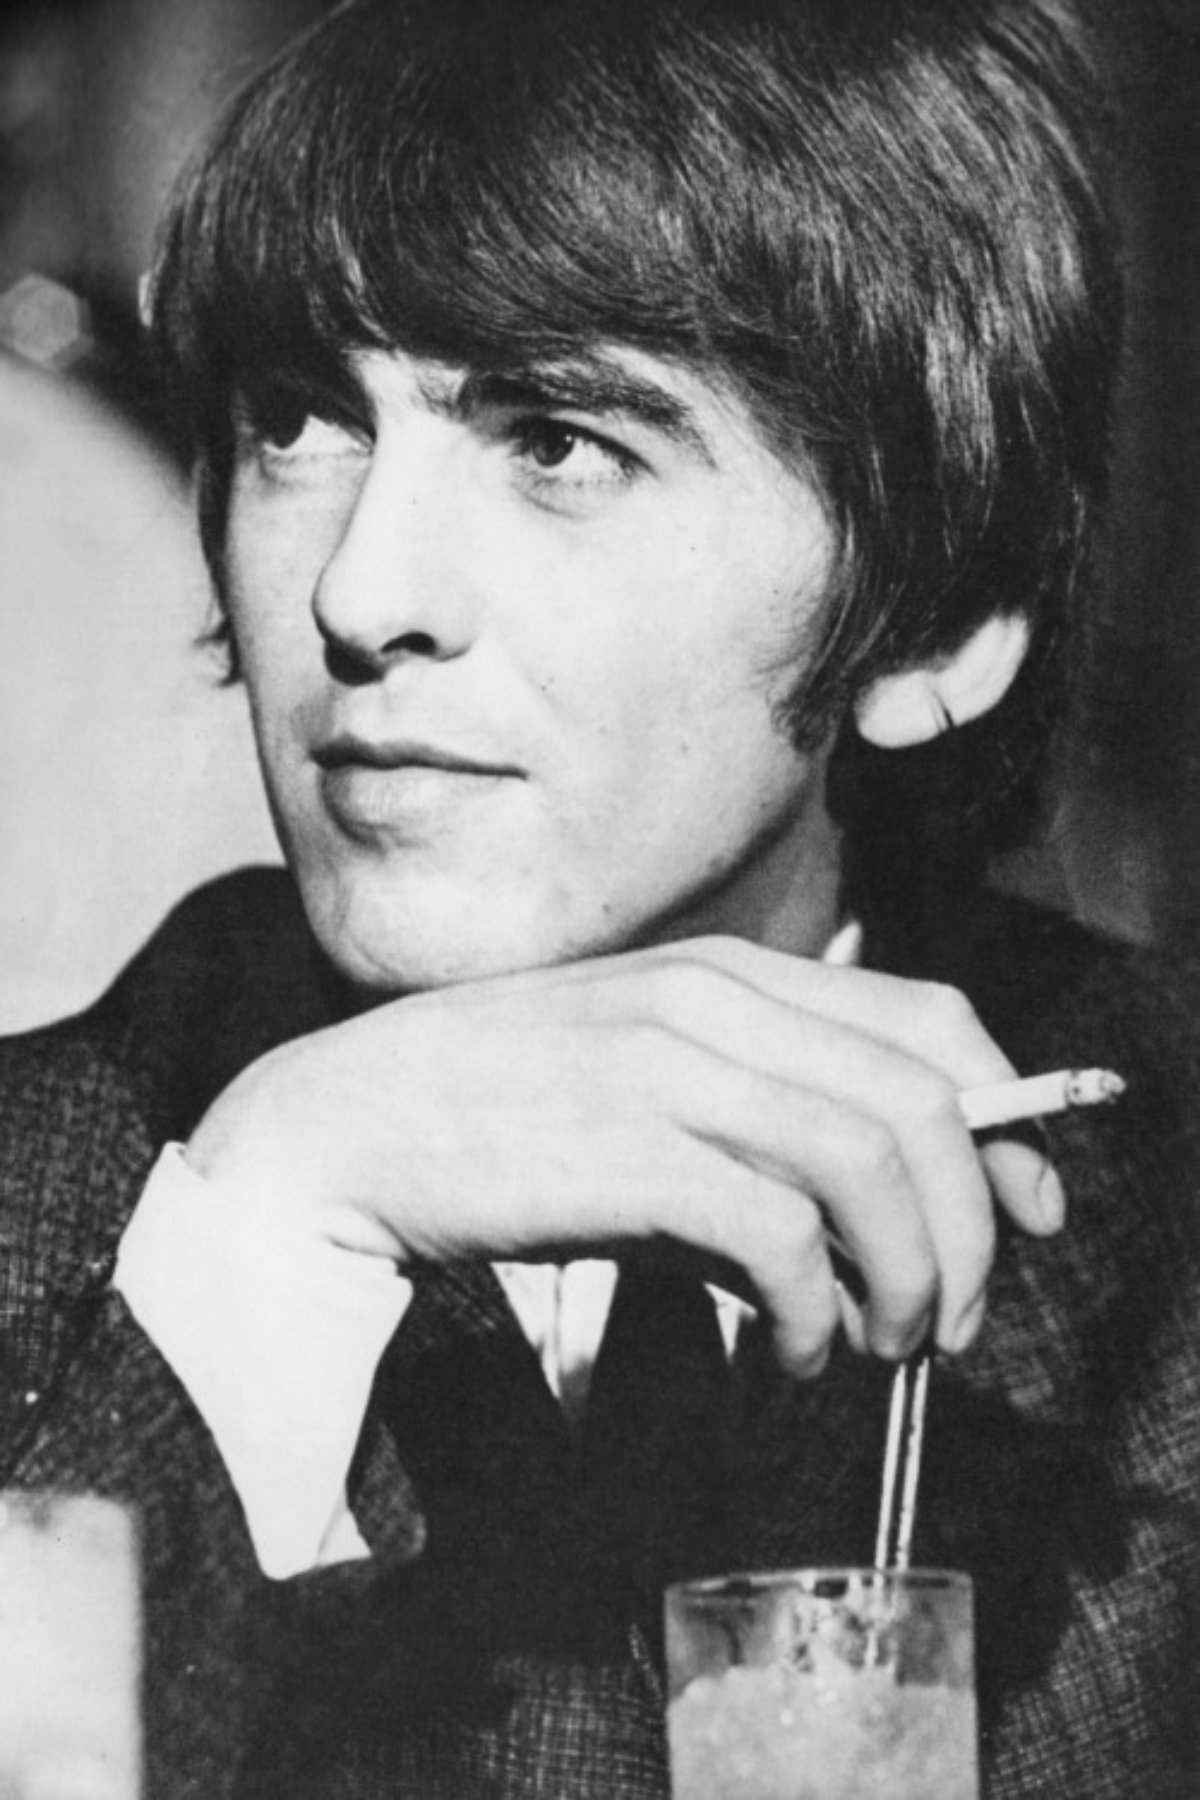 Harrison est surtout connu comme le guitariste principal des Beatles.